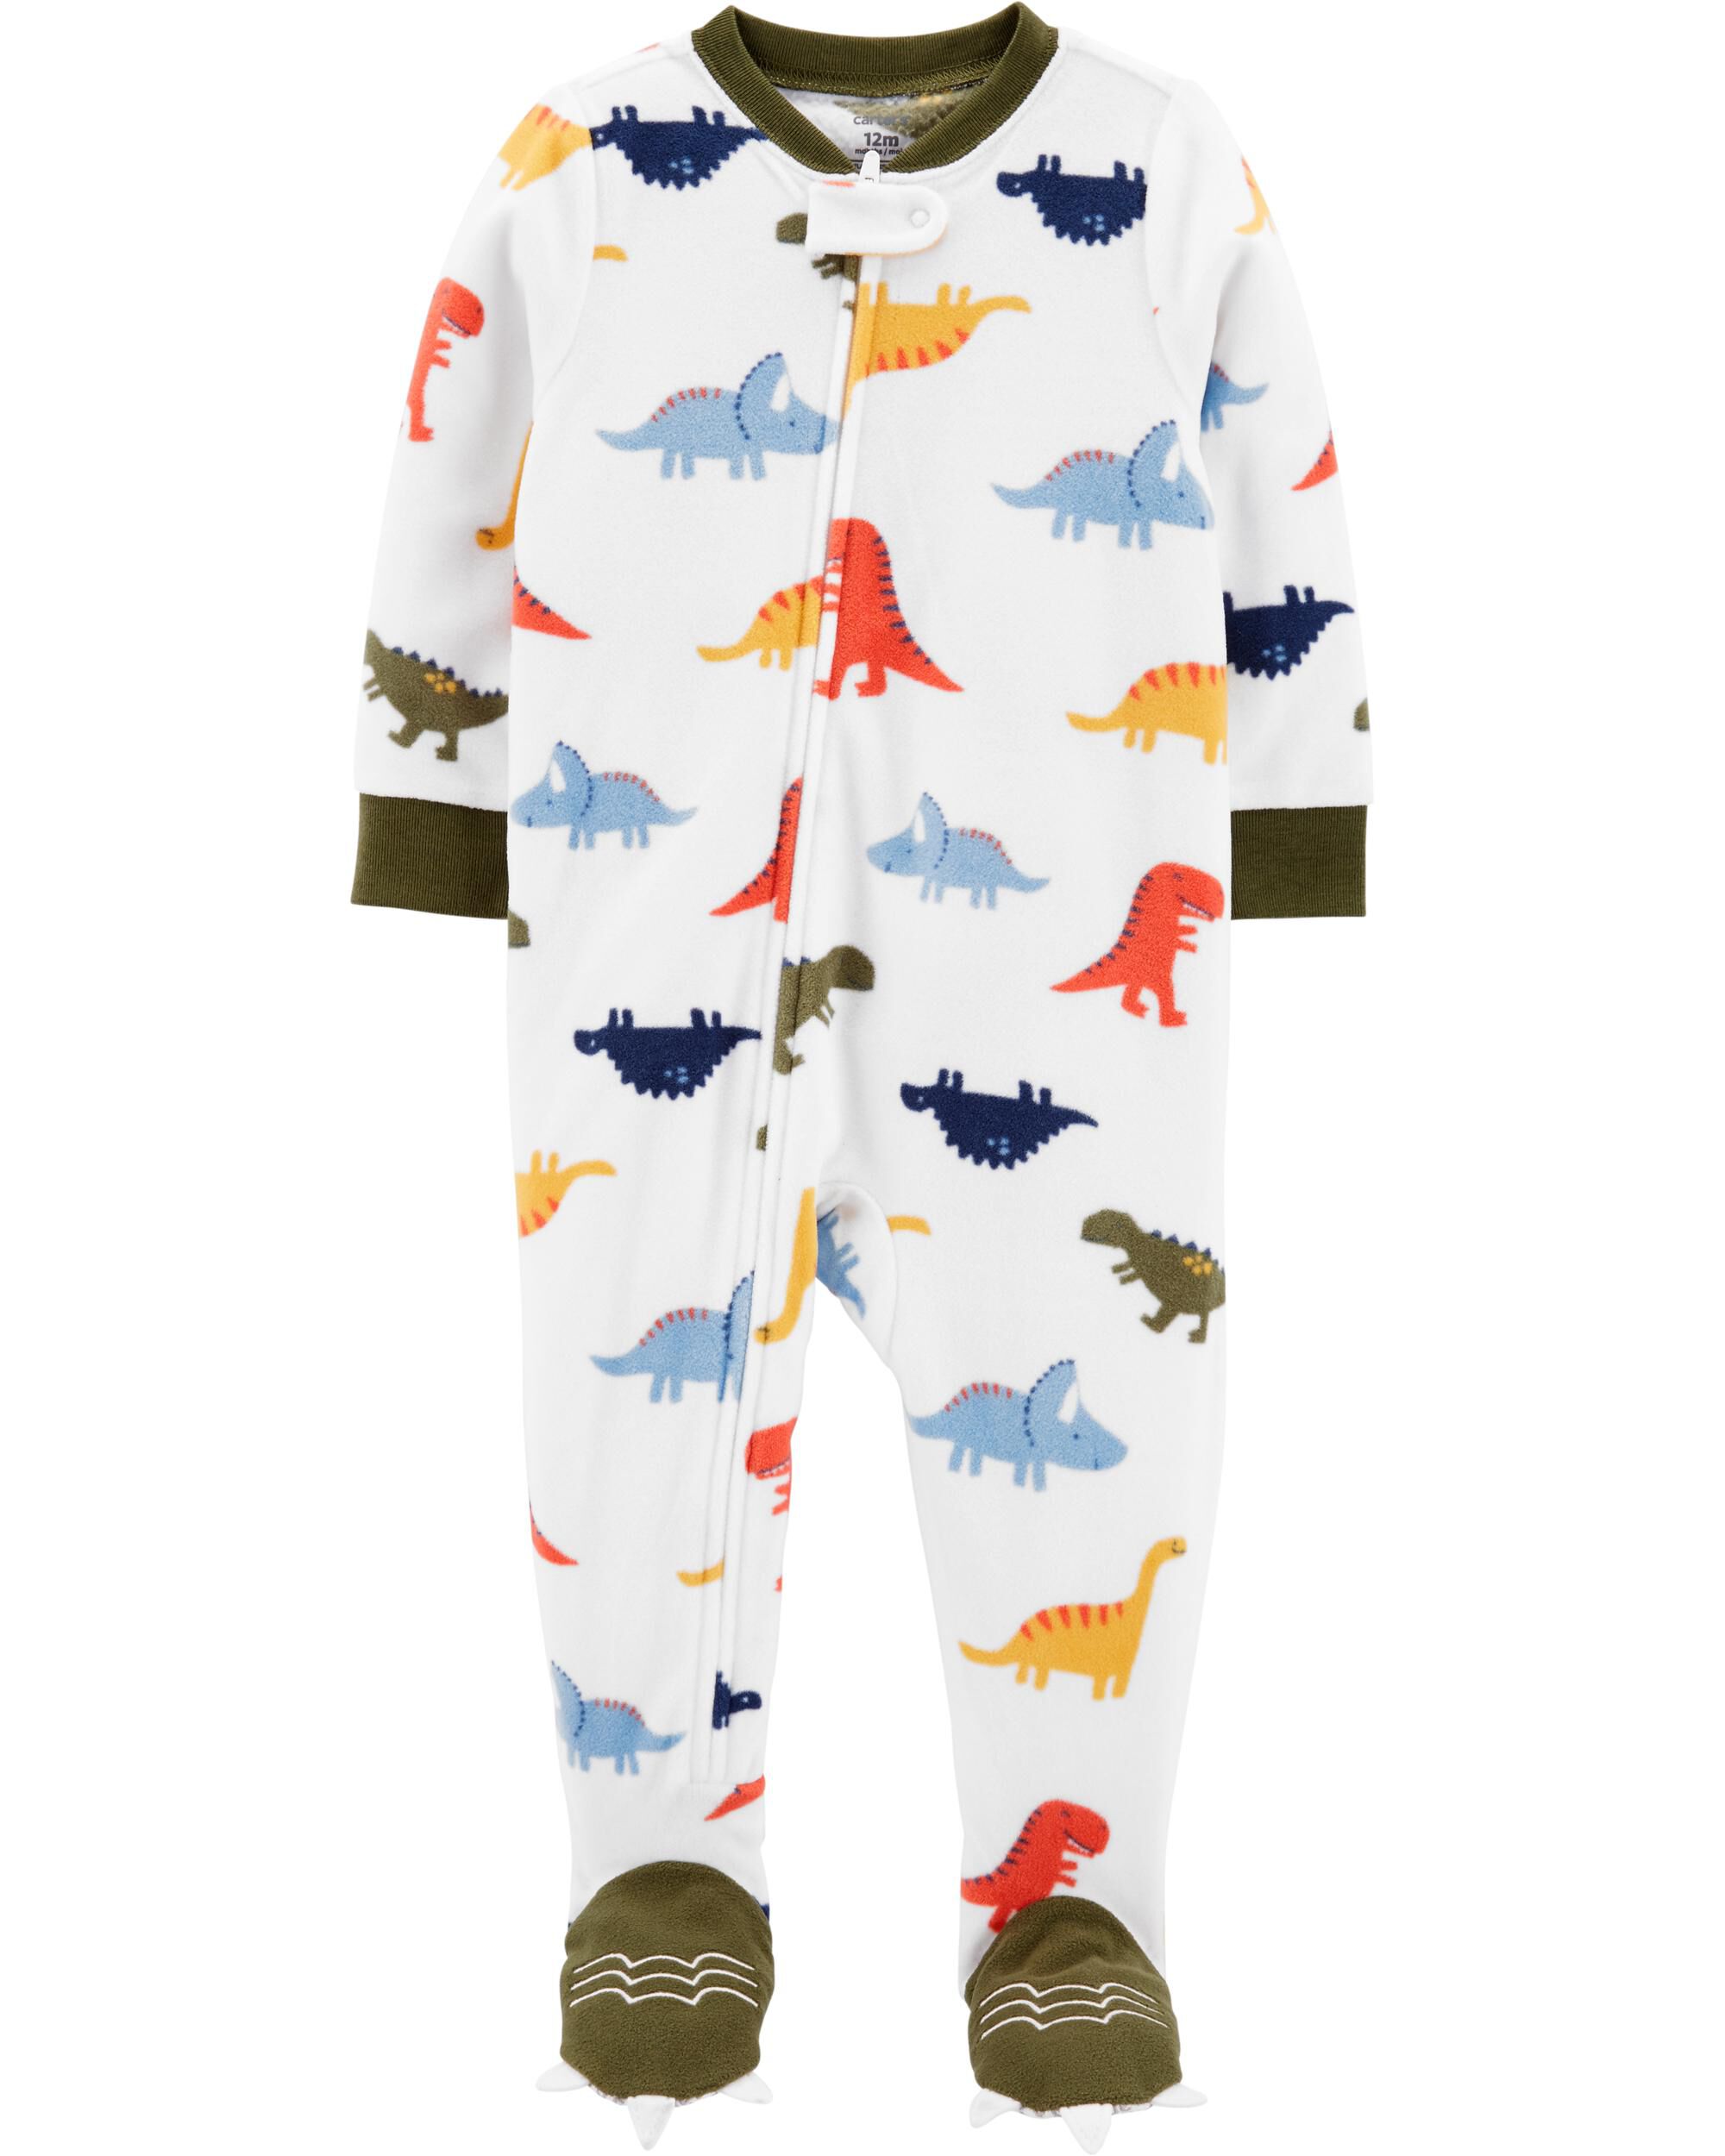 carters fleece dinosaur pajamas